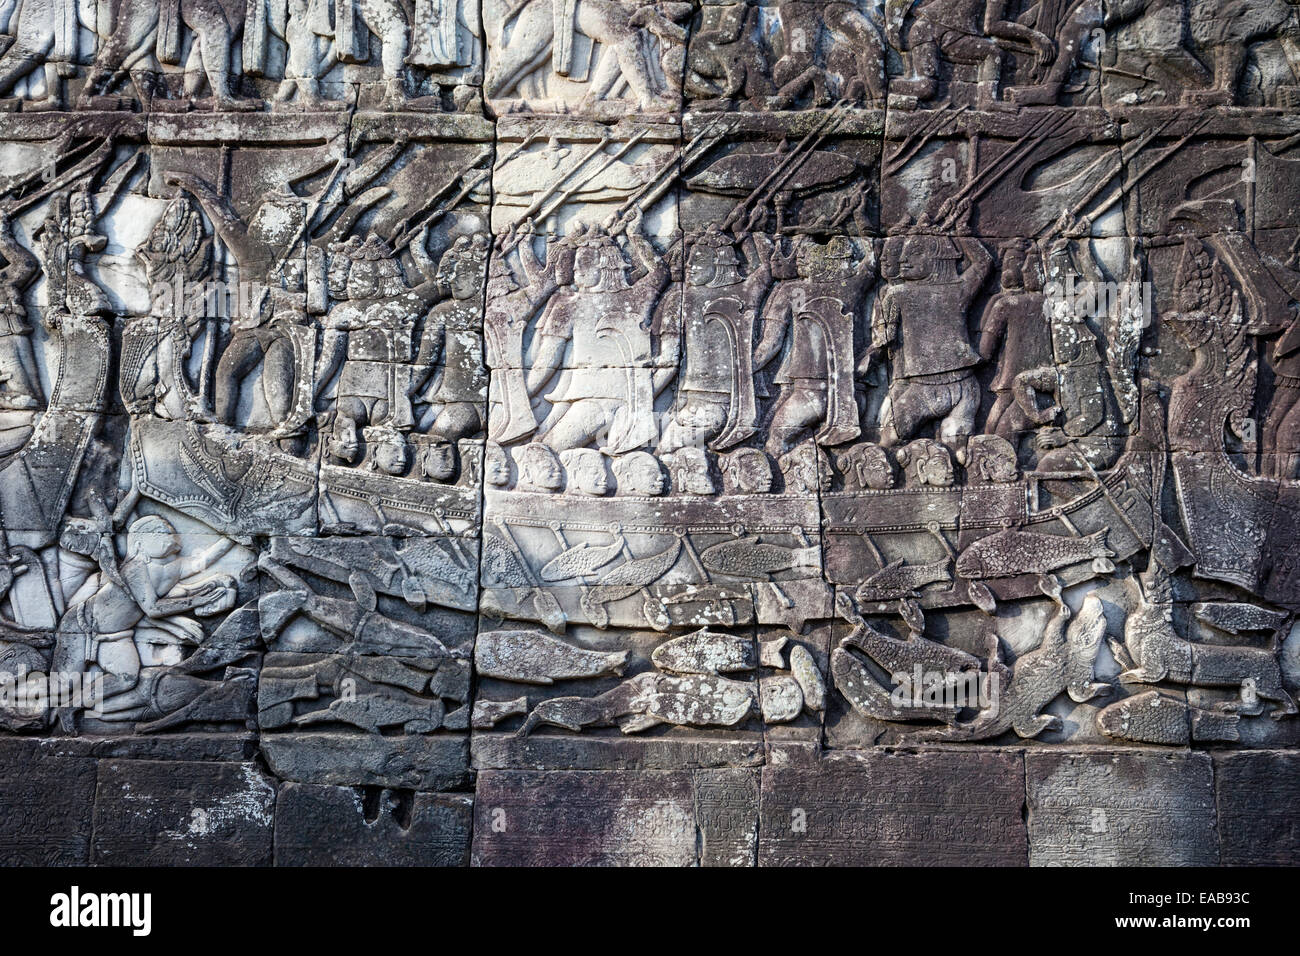 Cambogia, tempio Bayon. Il bassorilievo incisioni. Cham guerrieri impegnati in un 12esimo secolo battaglia navale, attaccando i Khmer. Foto Stock